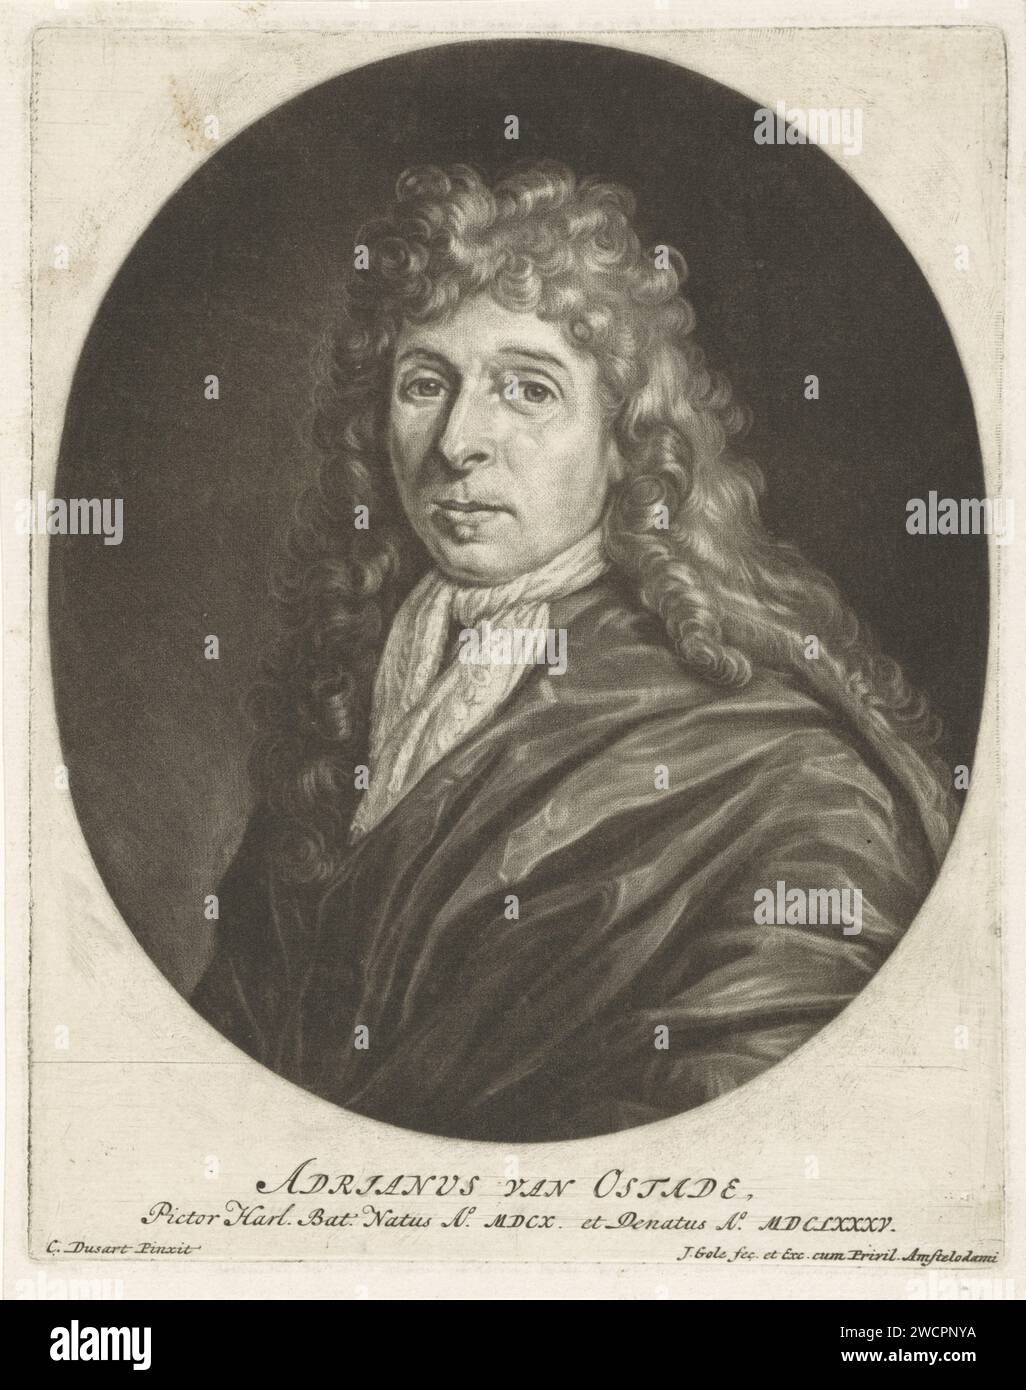 Portrait d'Adriaen van Ostade, Jacob Gole, d'après Cornelis Dusart, 1685 estampe du peintre Adriaen van Ostade. Il porte un col en dentelle. Gravure sur papier Amsterdam Banque D'Images